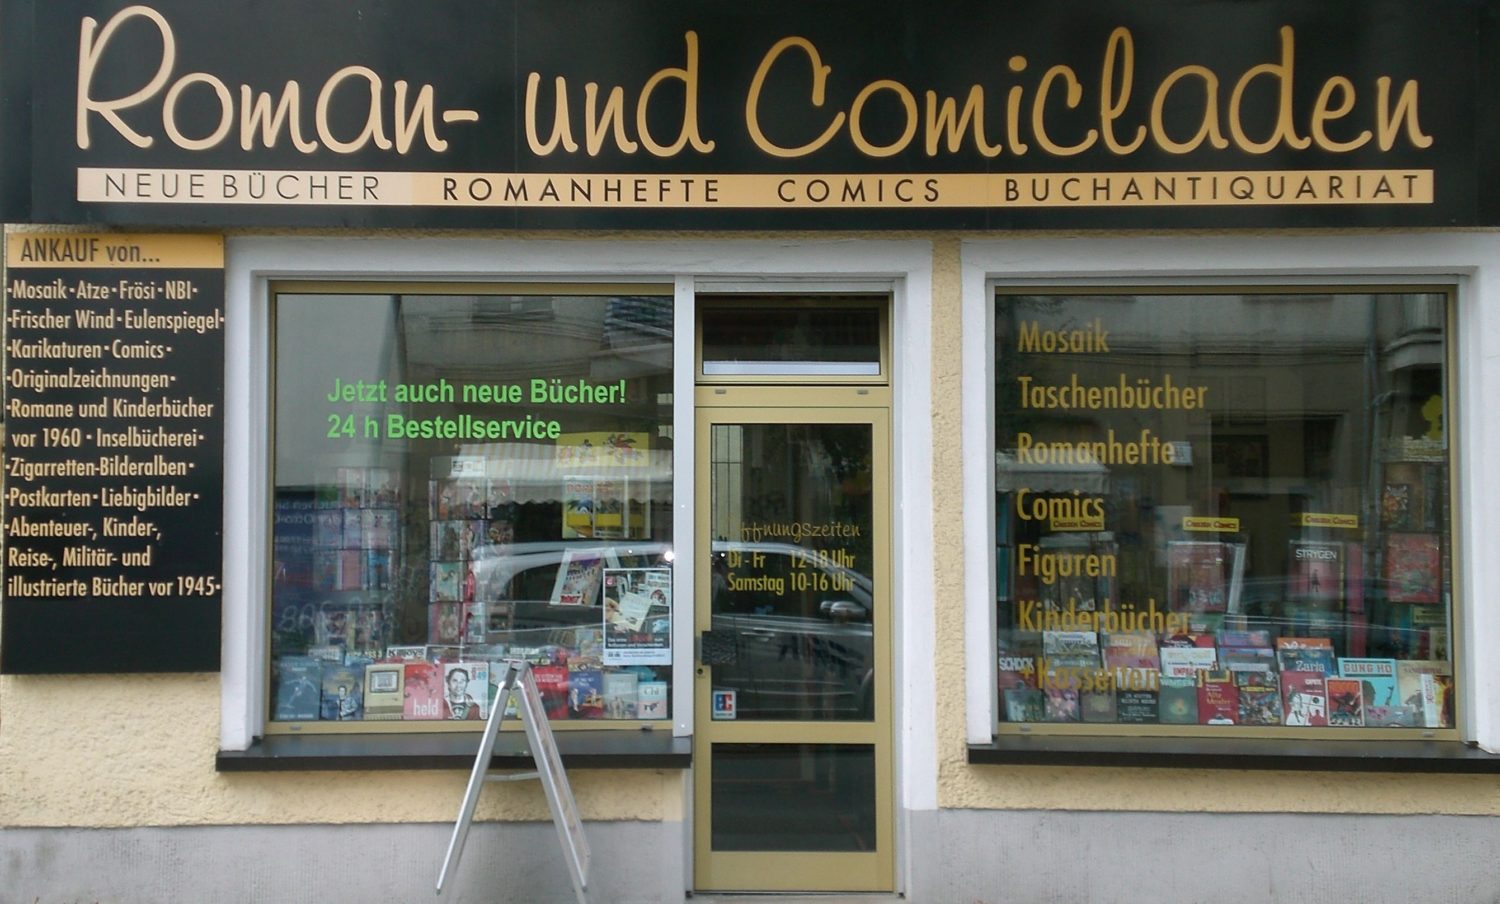 Comicläden in Berlin: Nicht alles gibt es auch online - ein Besuch im Laden lohnt sich. Foto: Roman- und Comicladen.